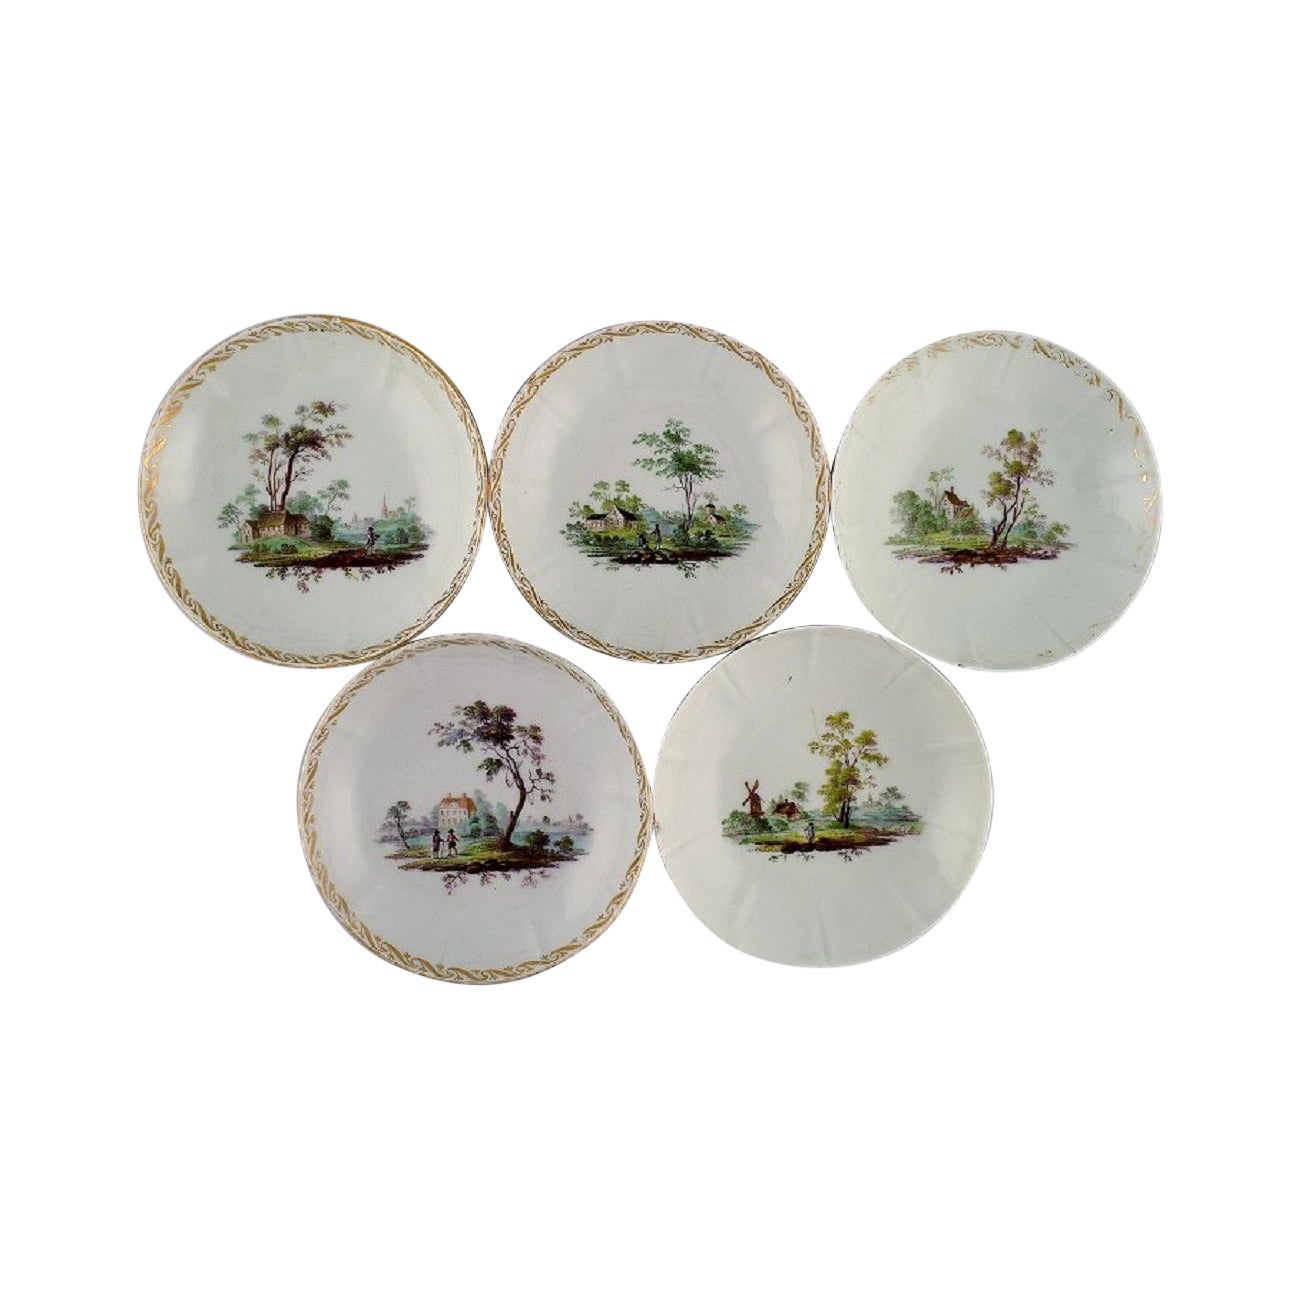 Five antique Royal Copenhagen porcelain bowls with hand-painted landscapes